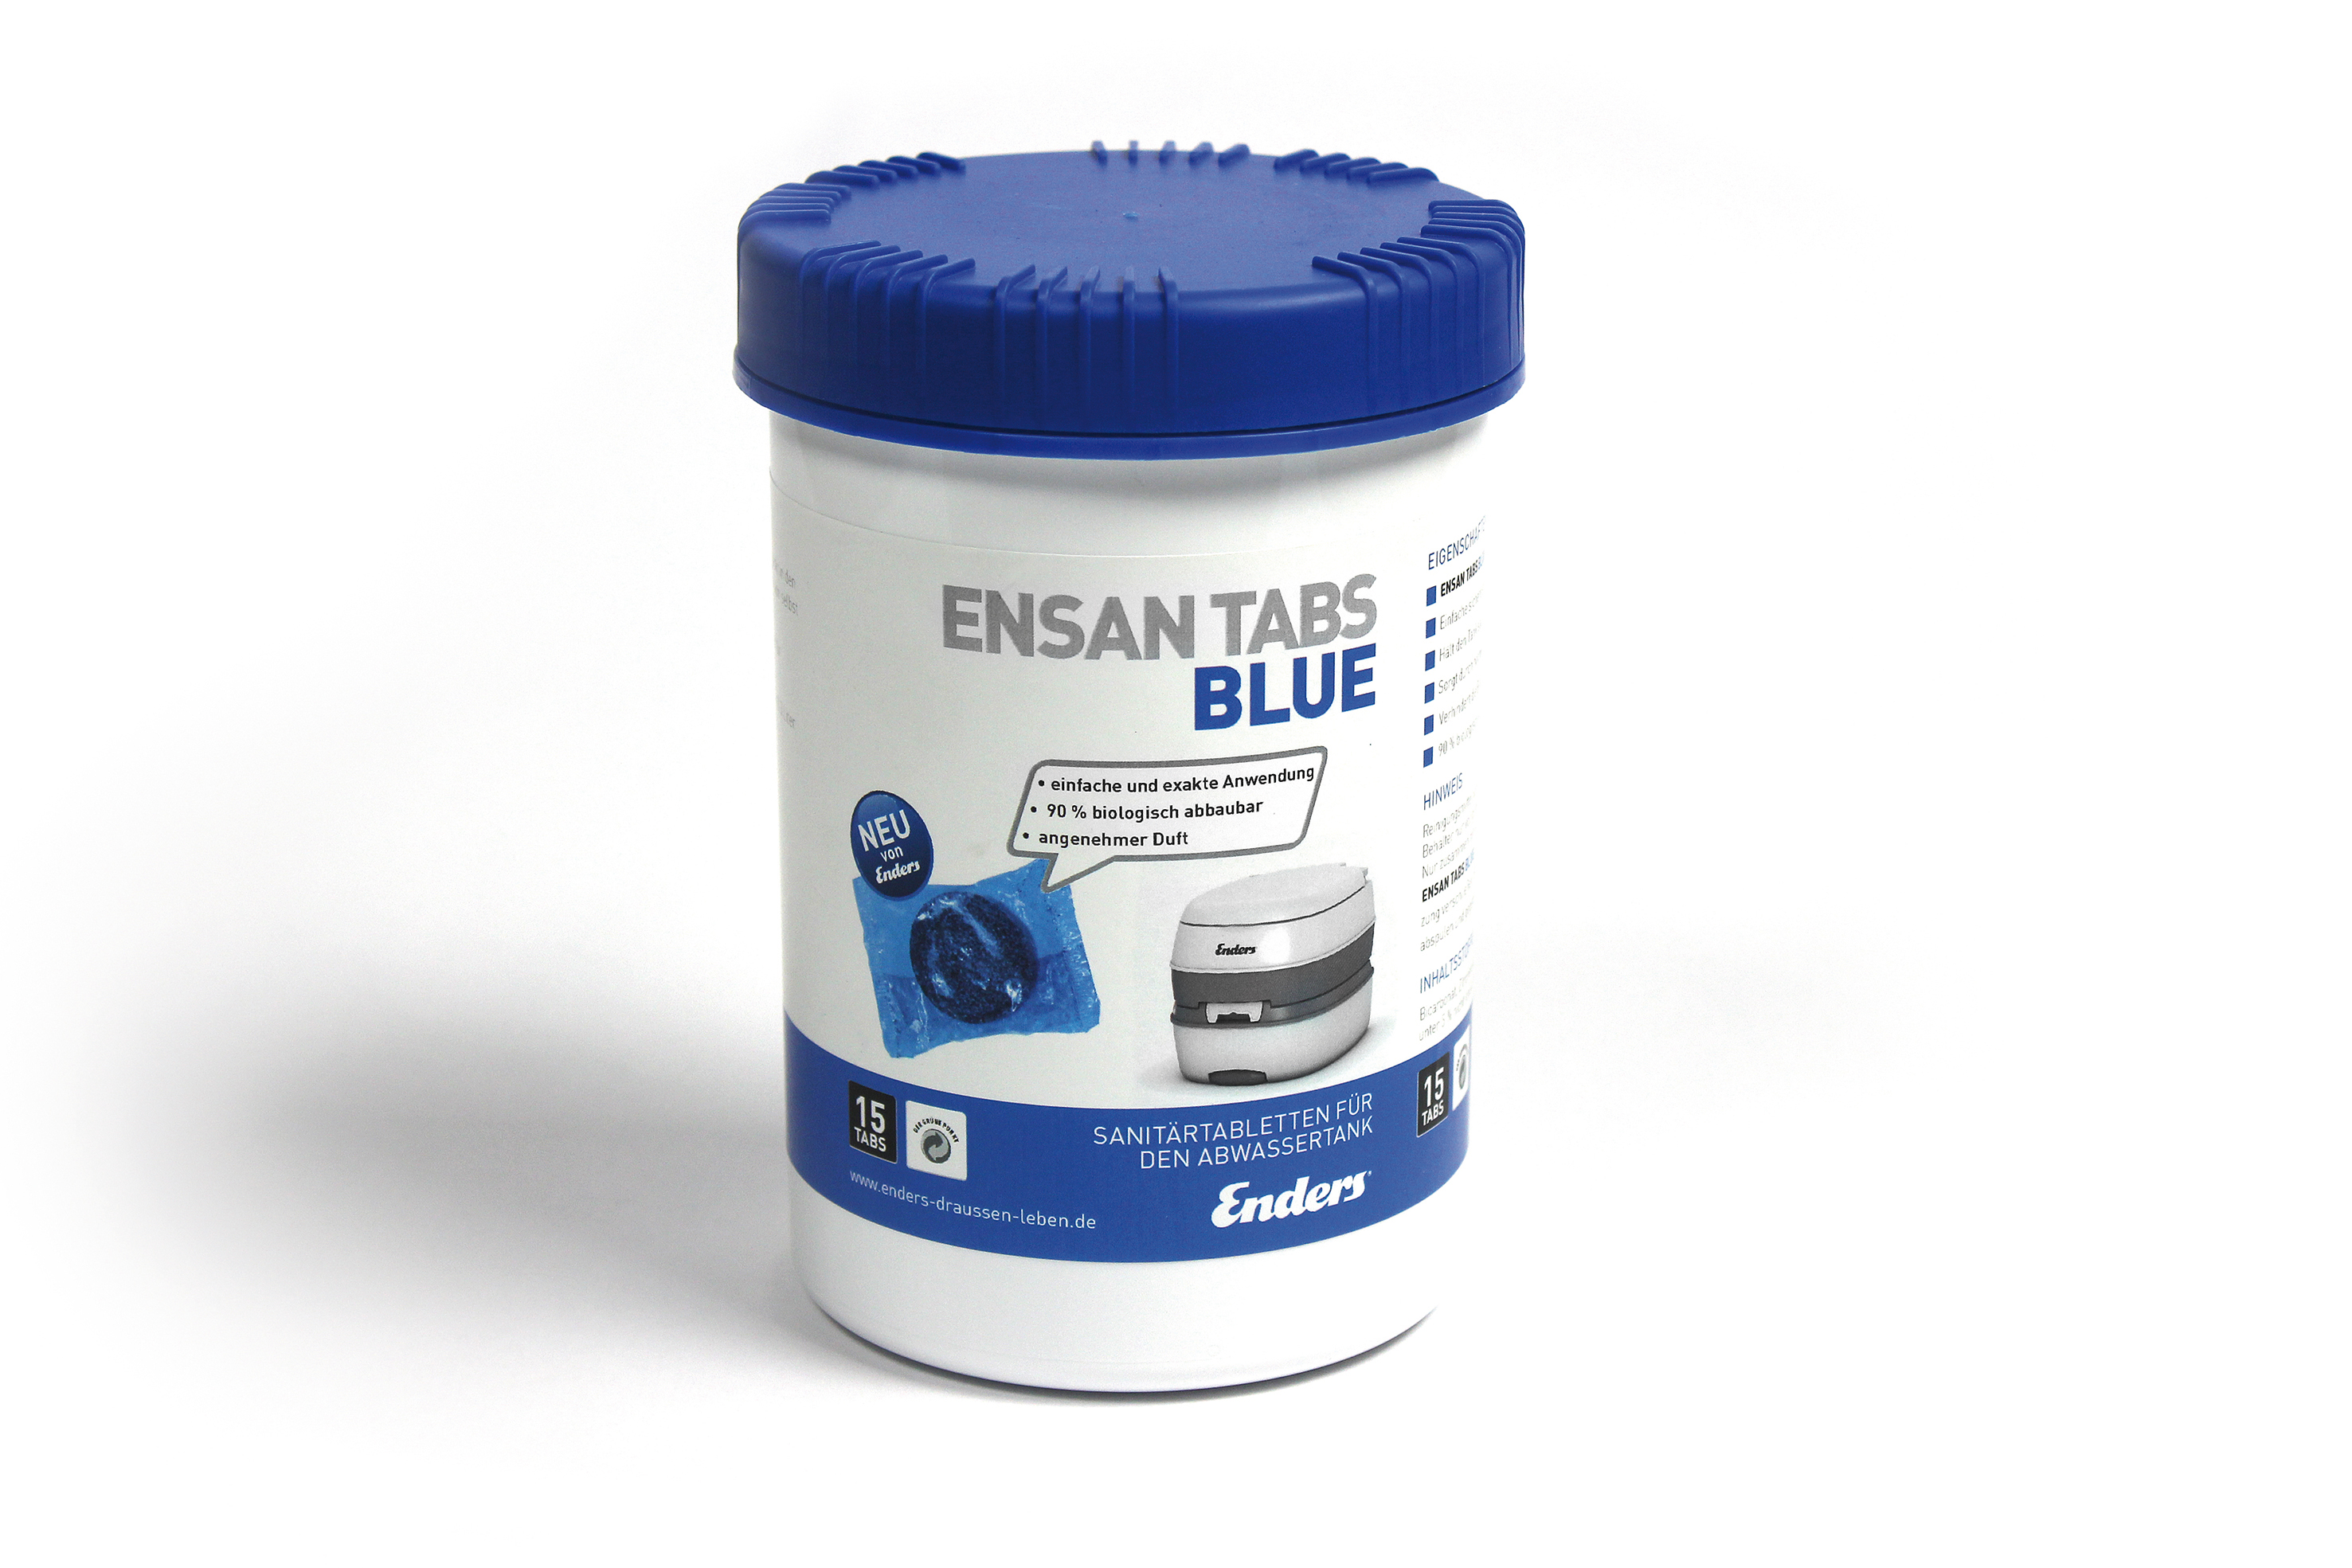 Enders Ensan Tabs Blue Abwasser 15 STK.